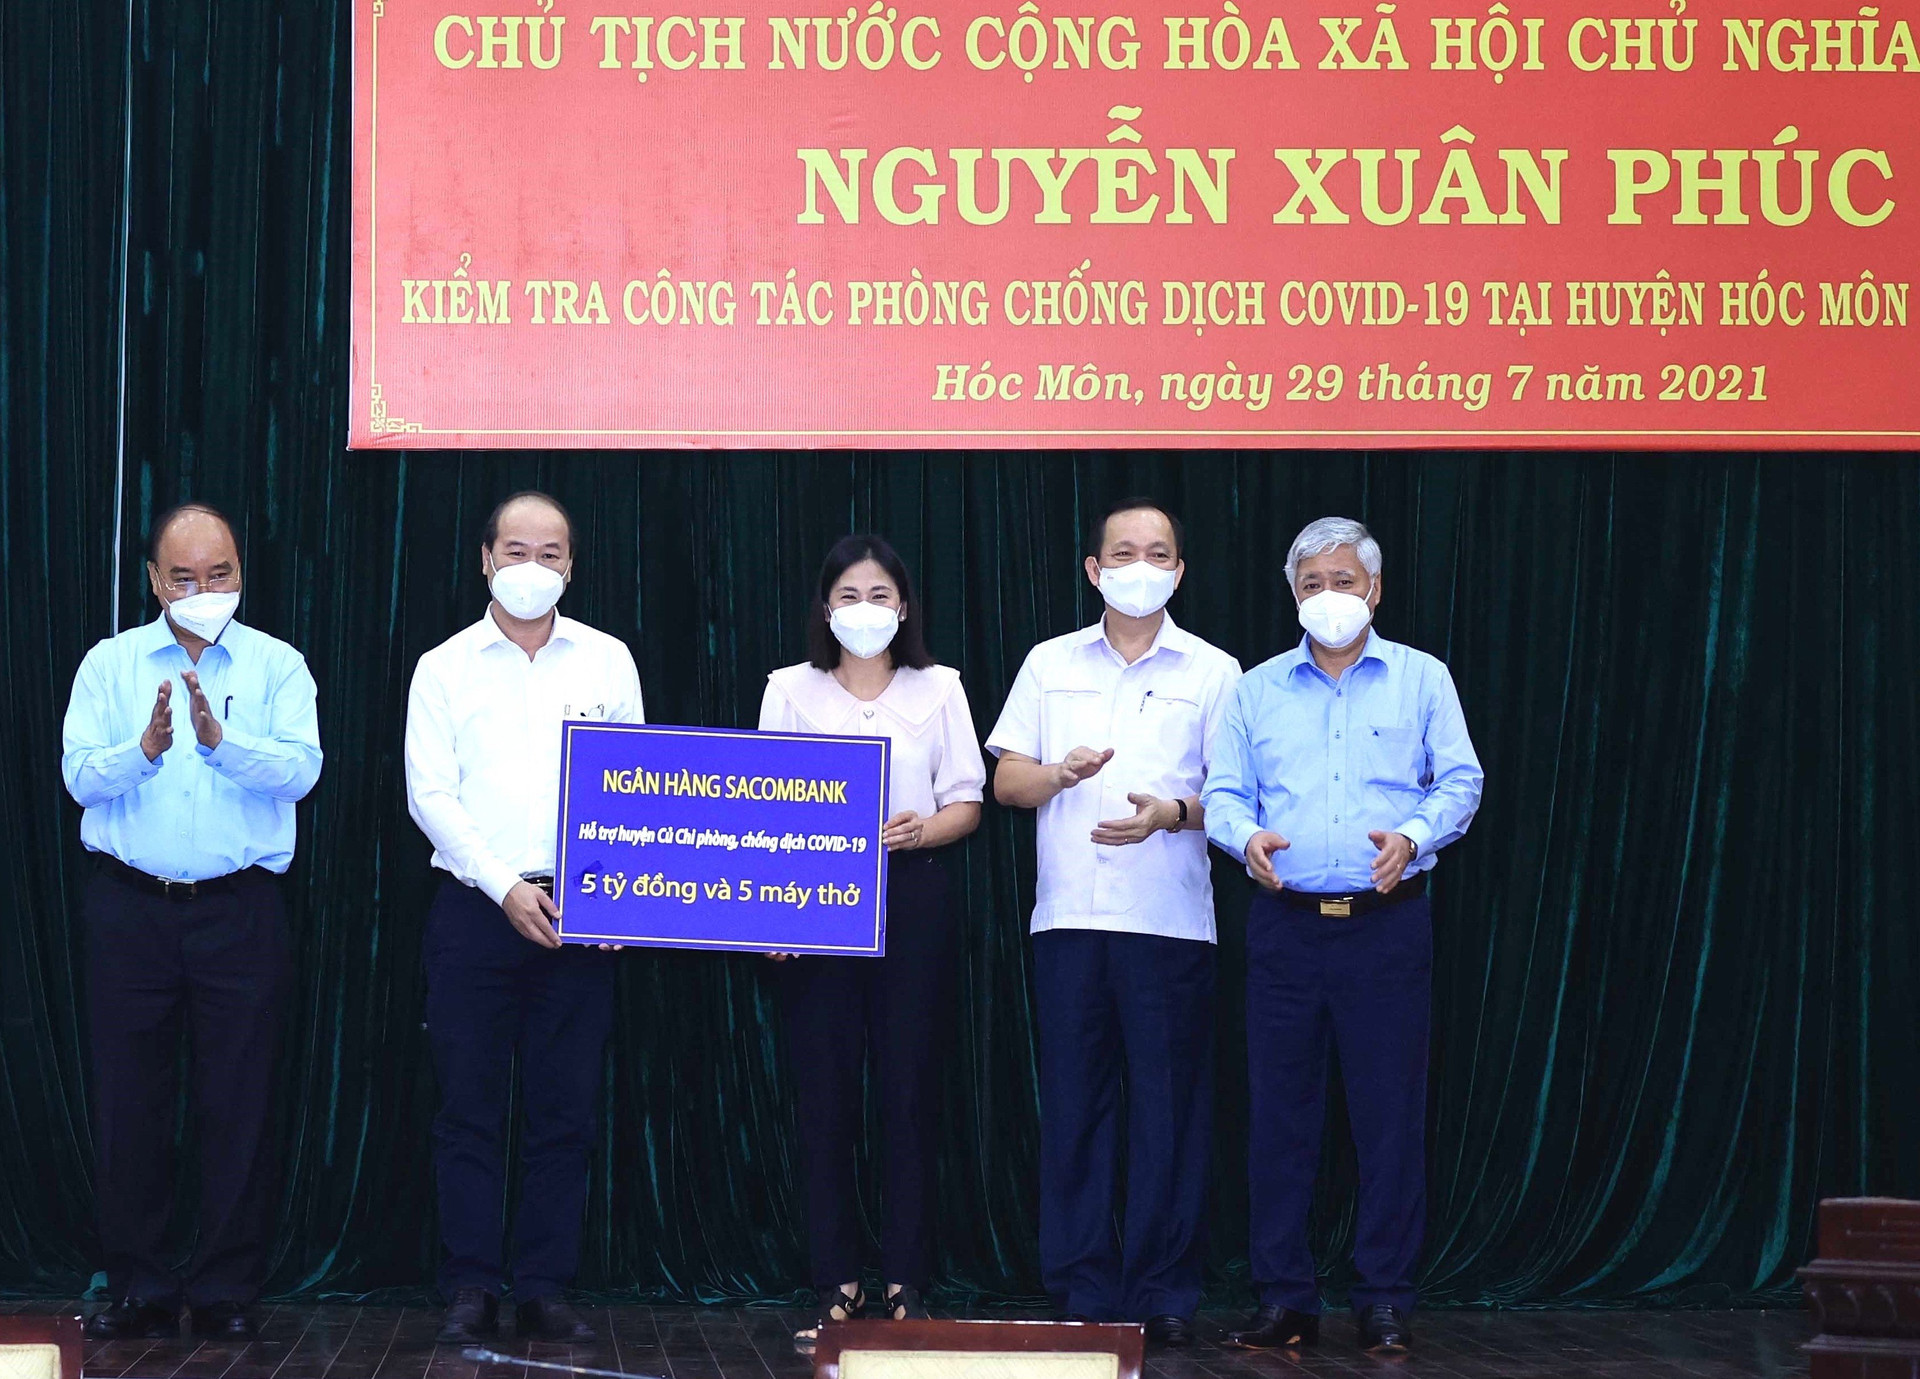 Chủ tịch nước Nguyễn Xuân Phúc và Chủ tịch Ủy ban Trung ương MTTQVN Đỗ Văn Chiến thay mặt đoàn trao tặng mỗi huyện 5 tỉ đồng và 5 máy thở từ nguồn hỗ trợ của doanh nghiệp.